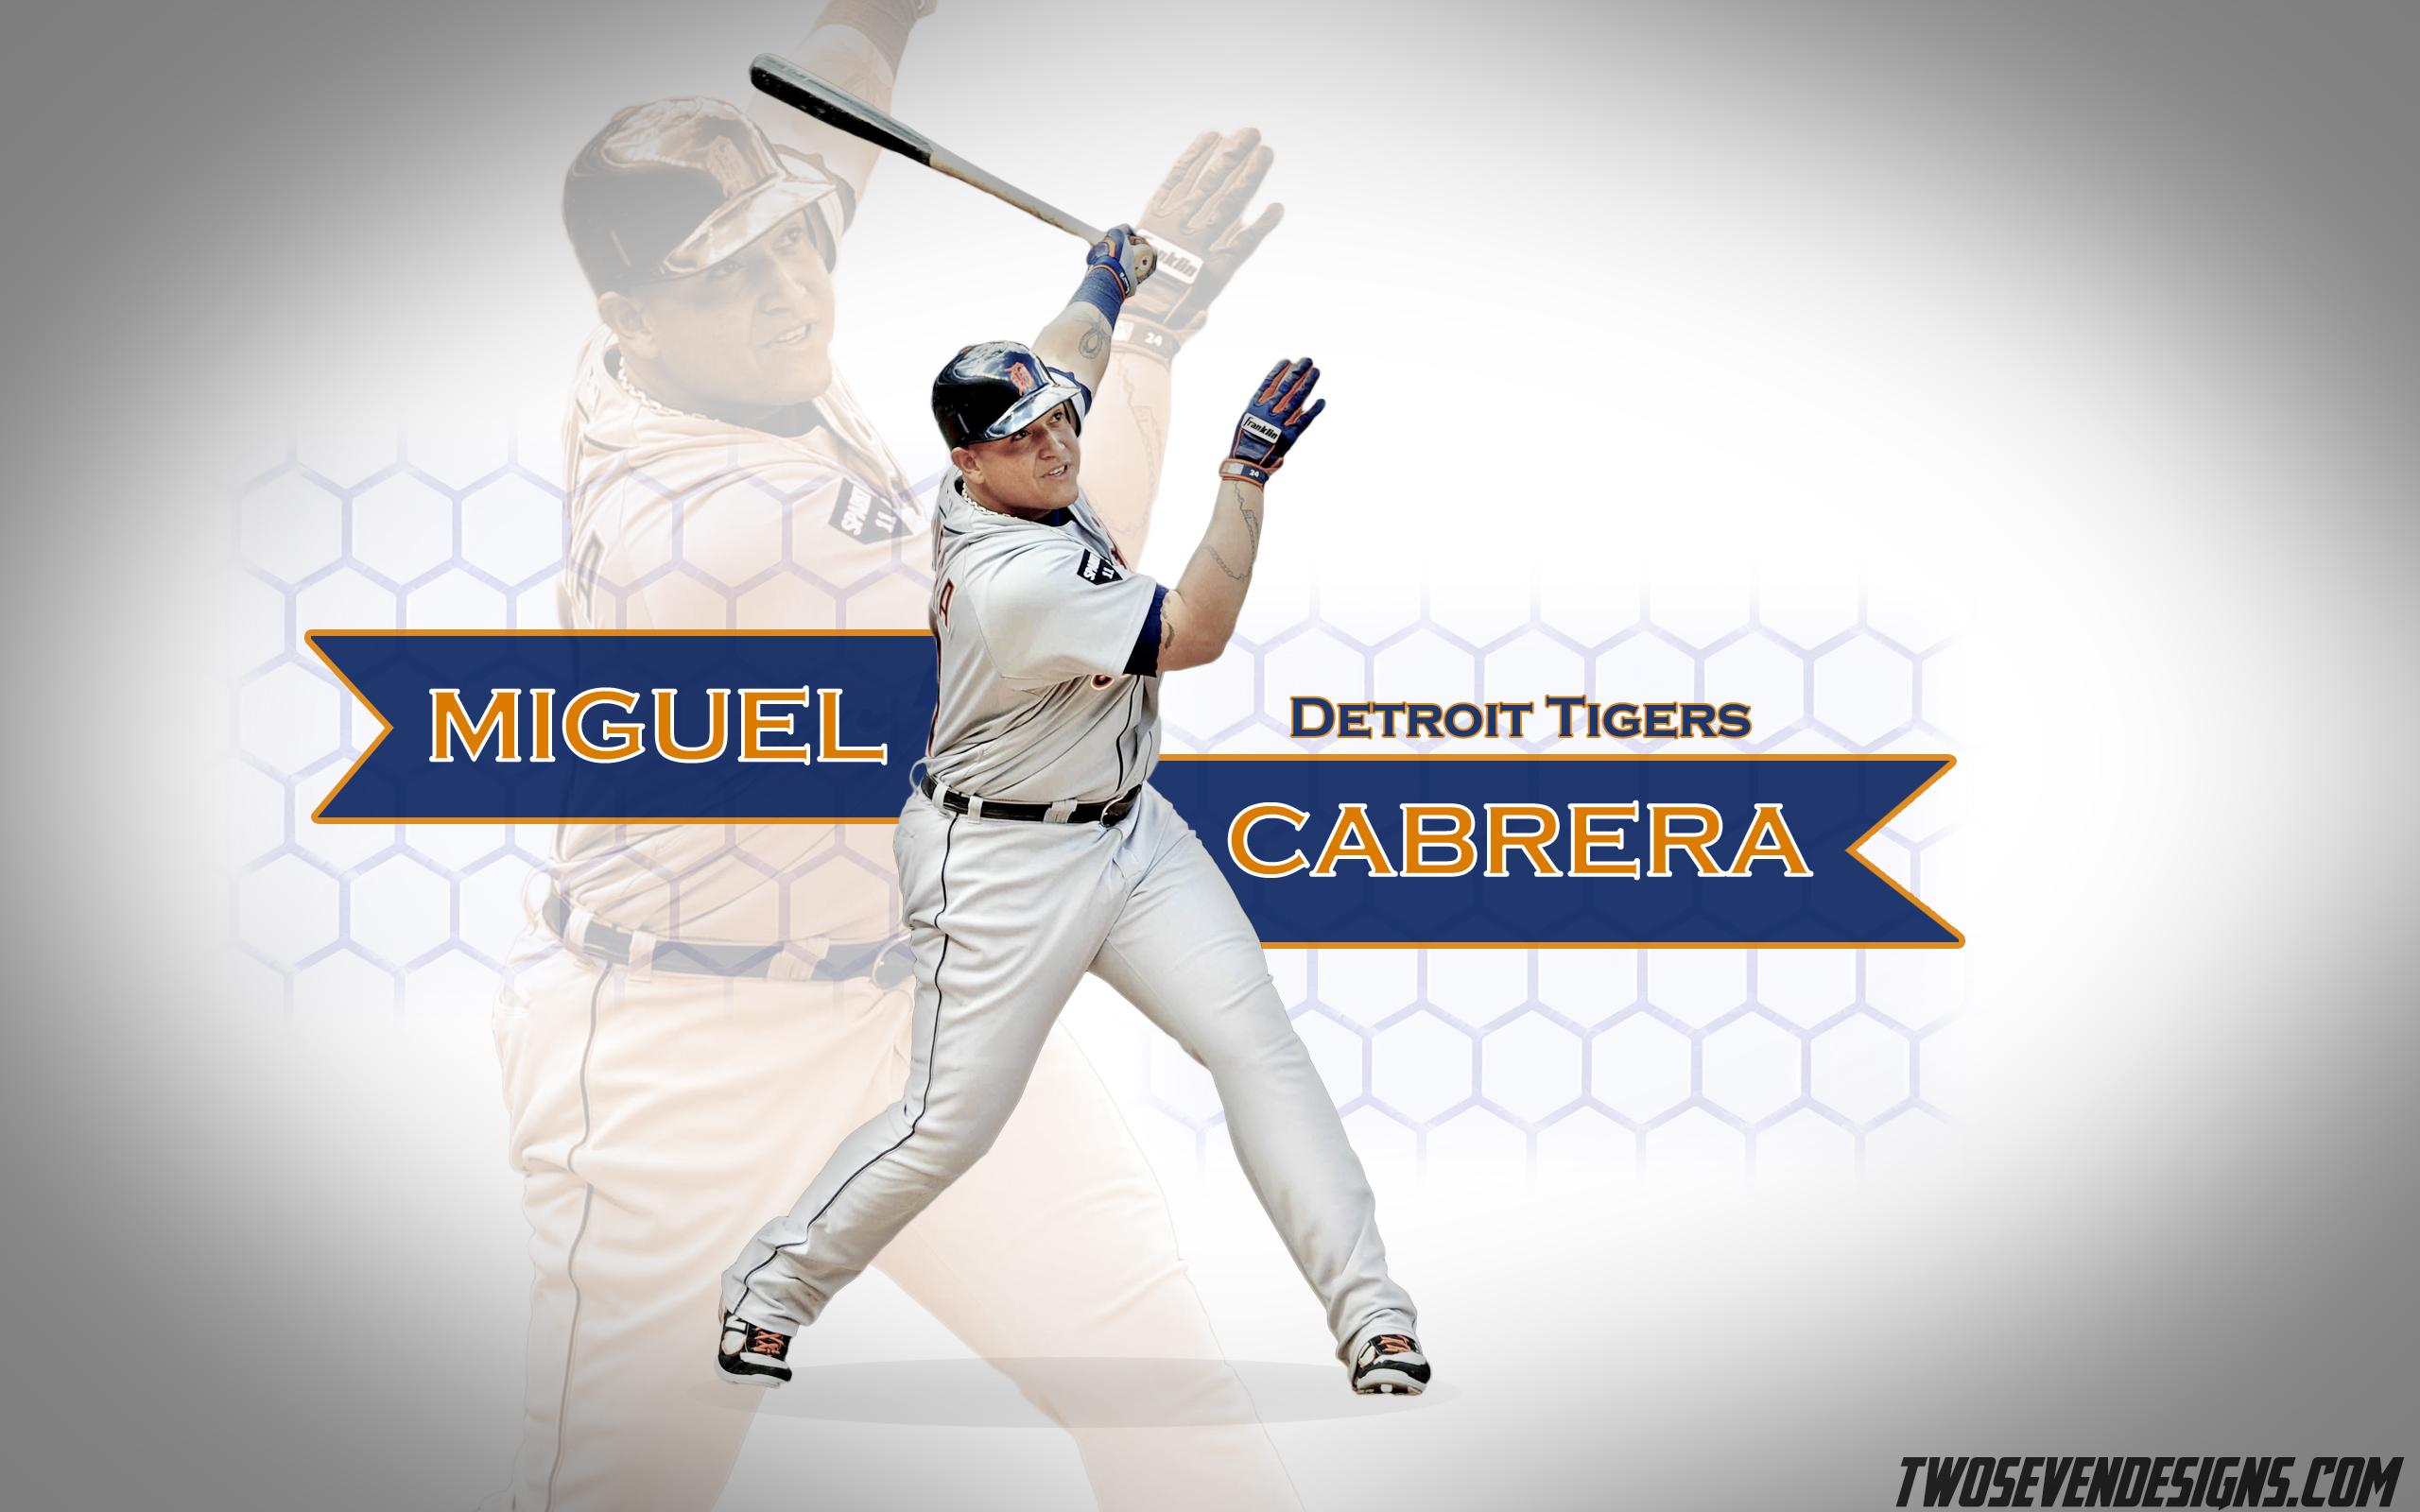 Miguel Cabrera 2014 Wallpaper. Enjoy, Tiger fans